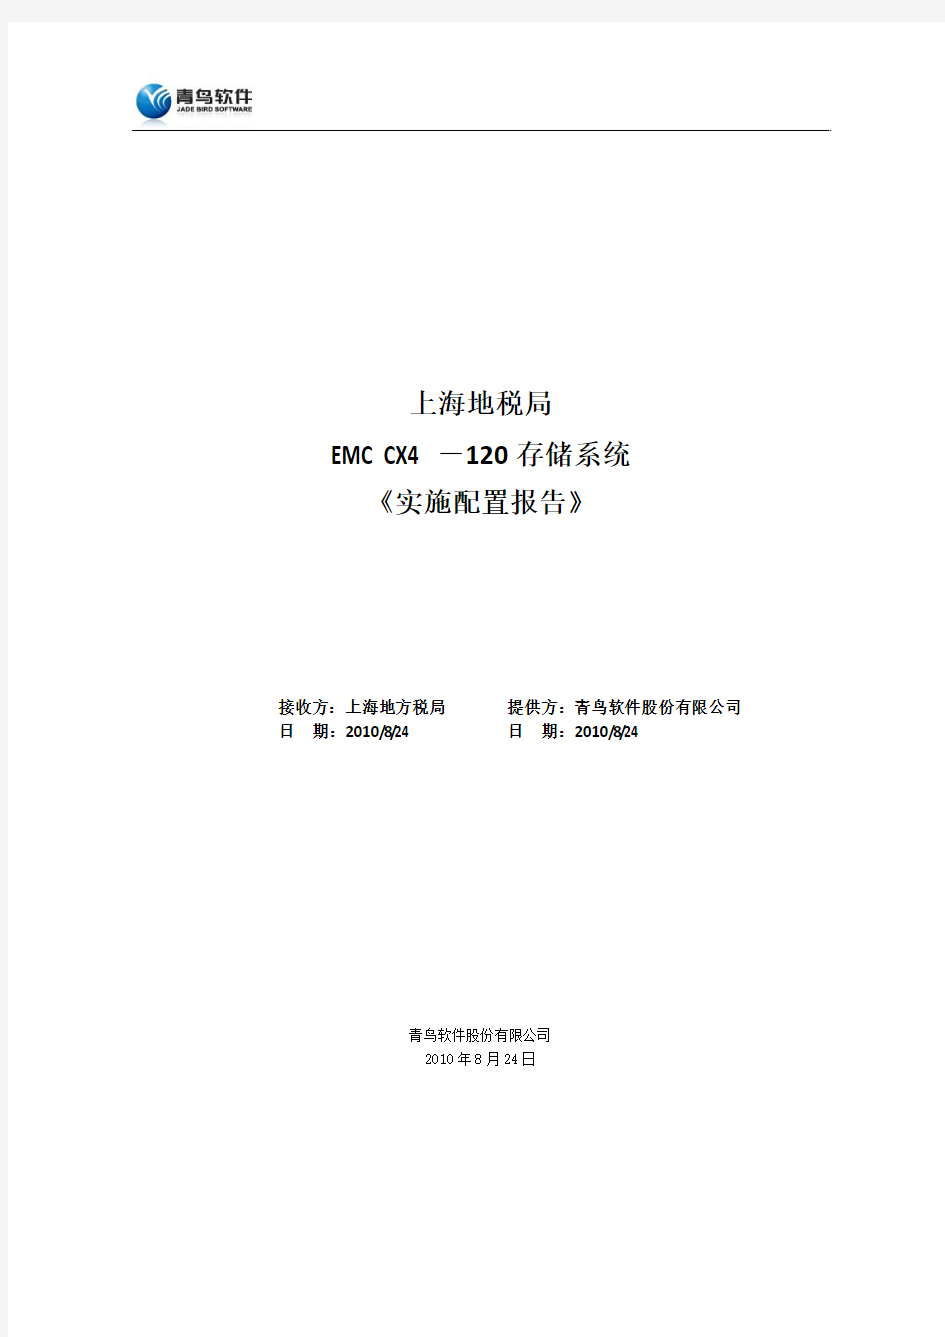 上海地税局-EMC存储-实施配置报告